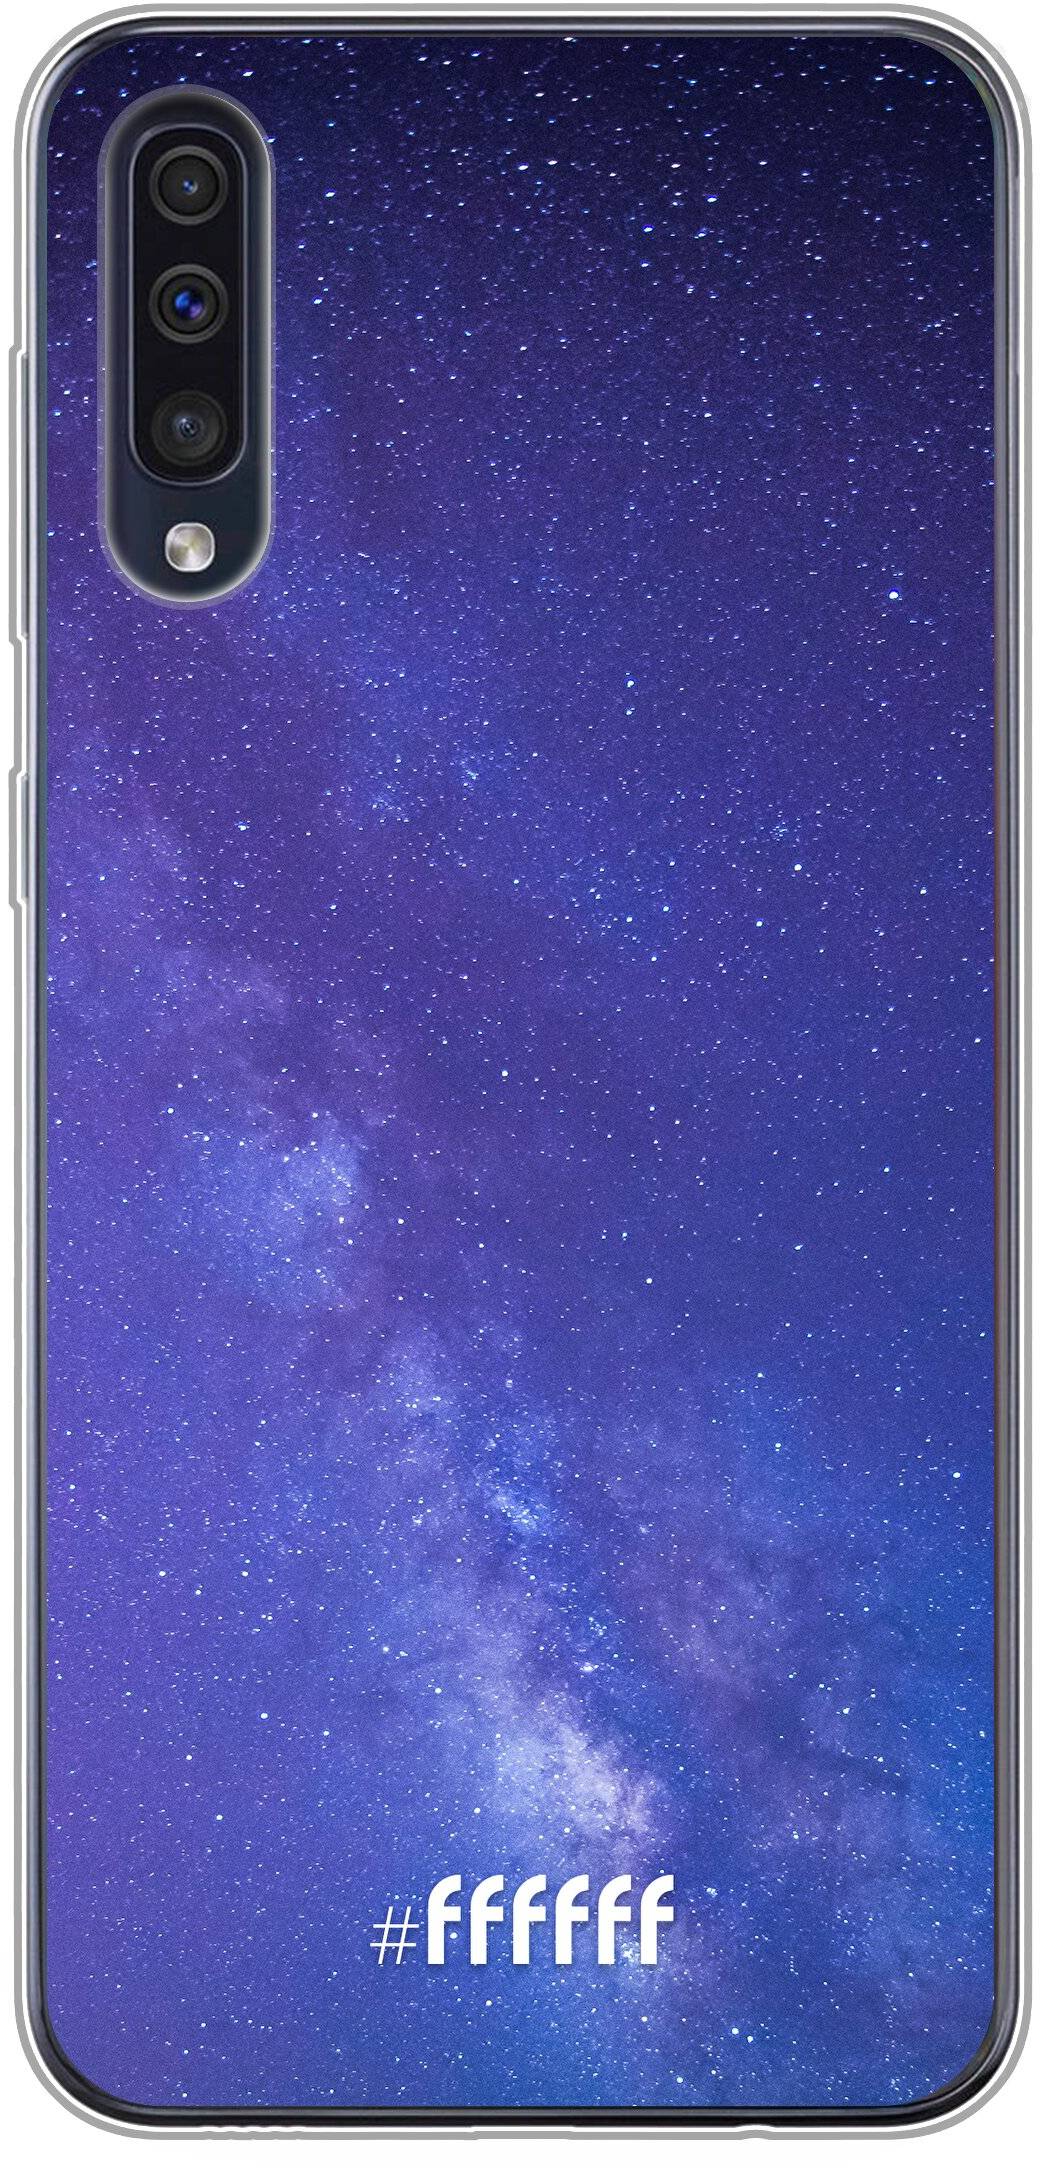 Star Cluster Galaxy A40